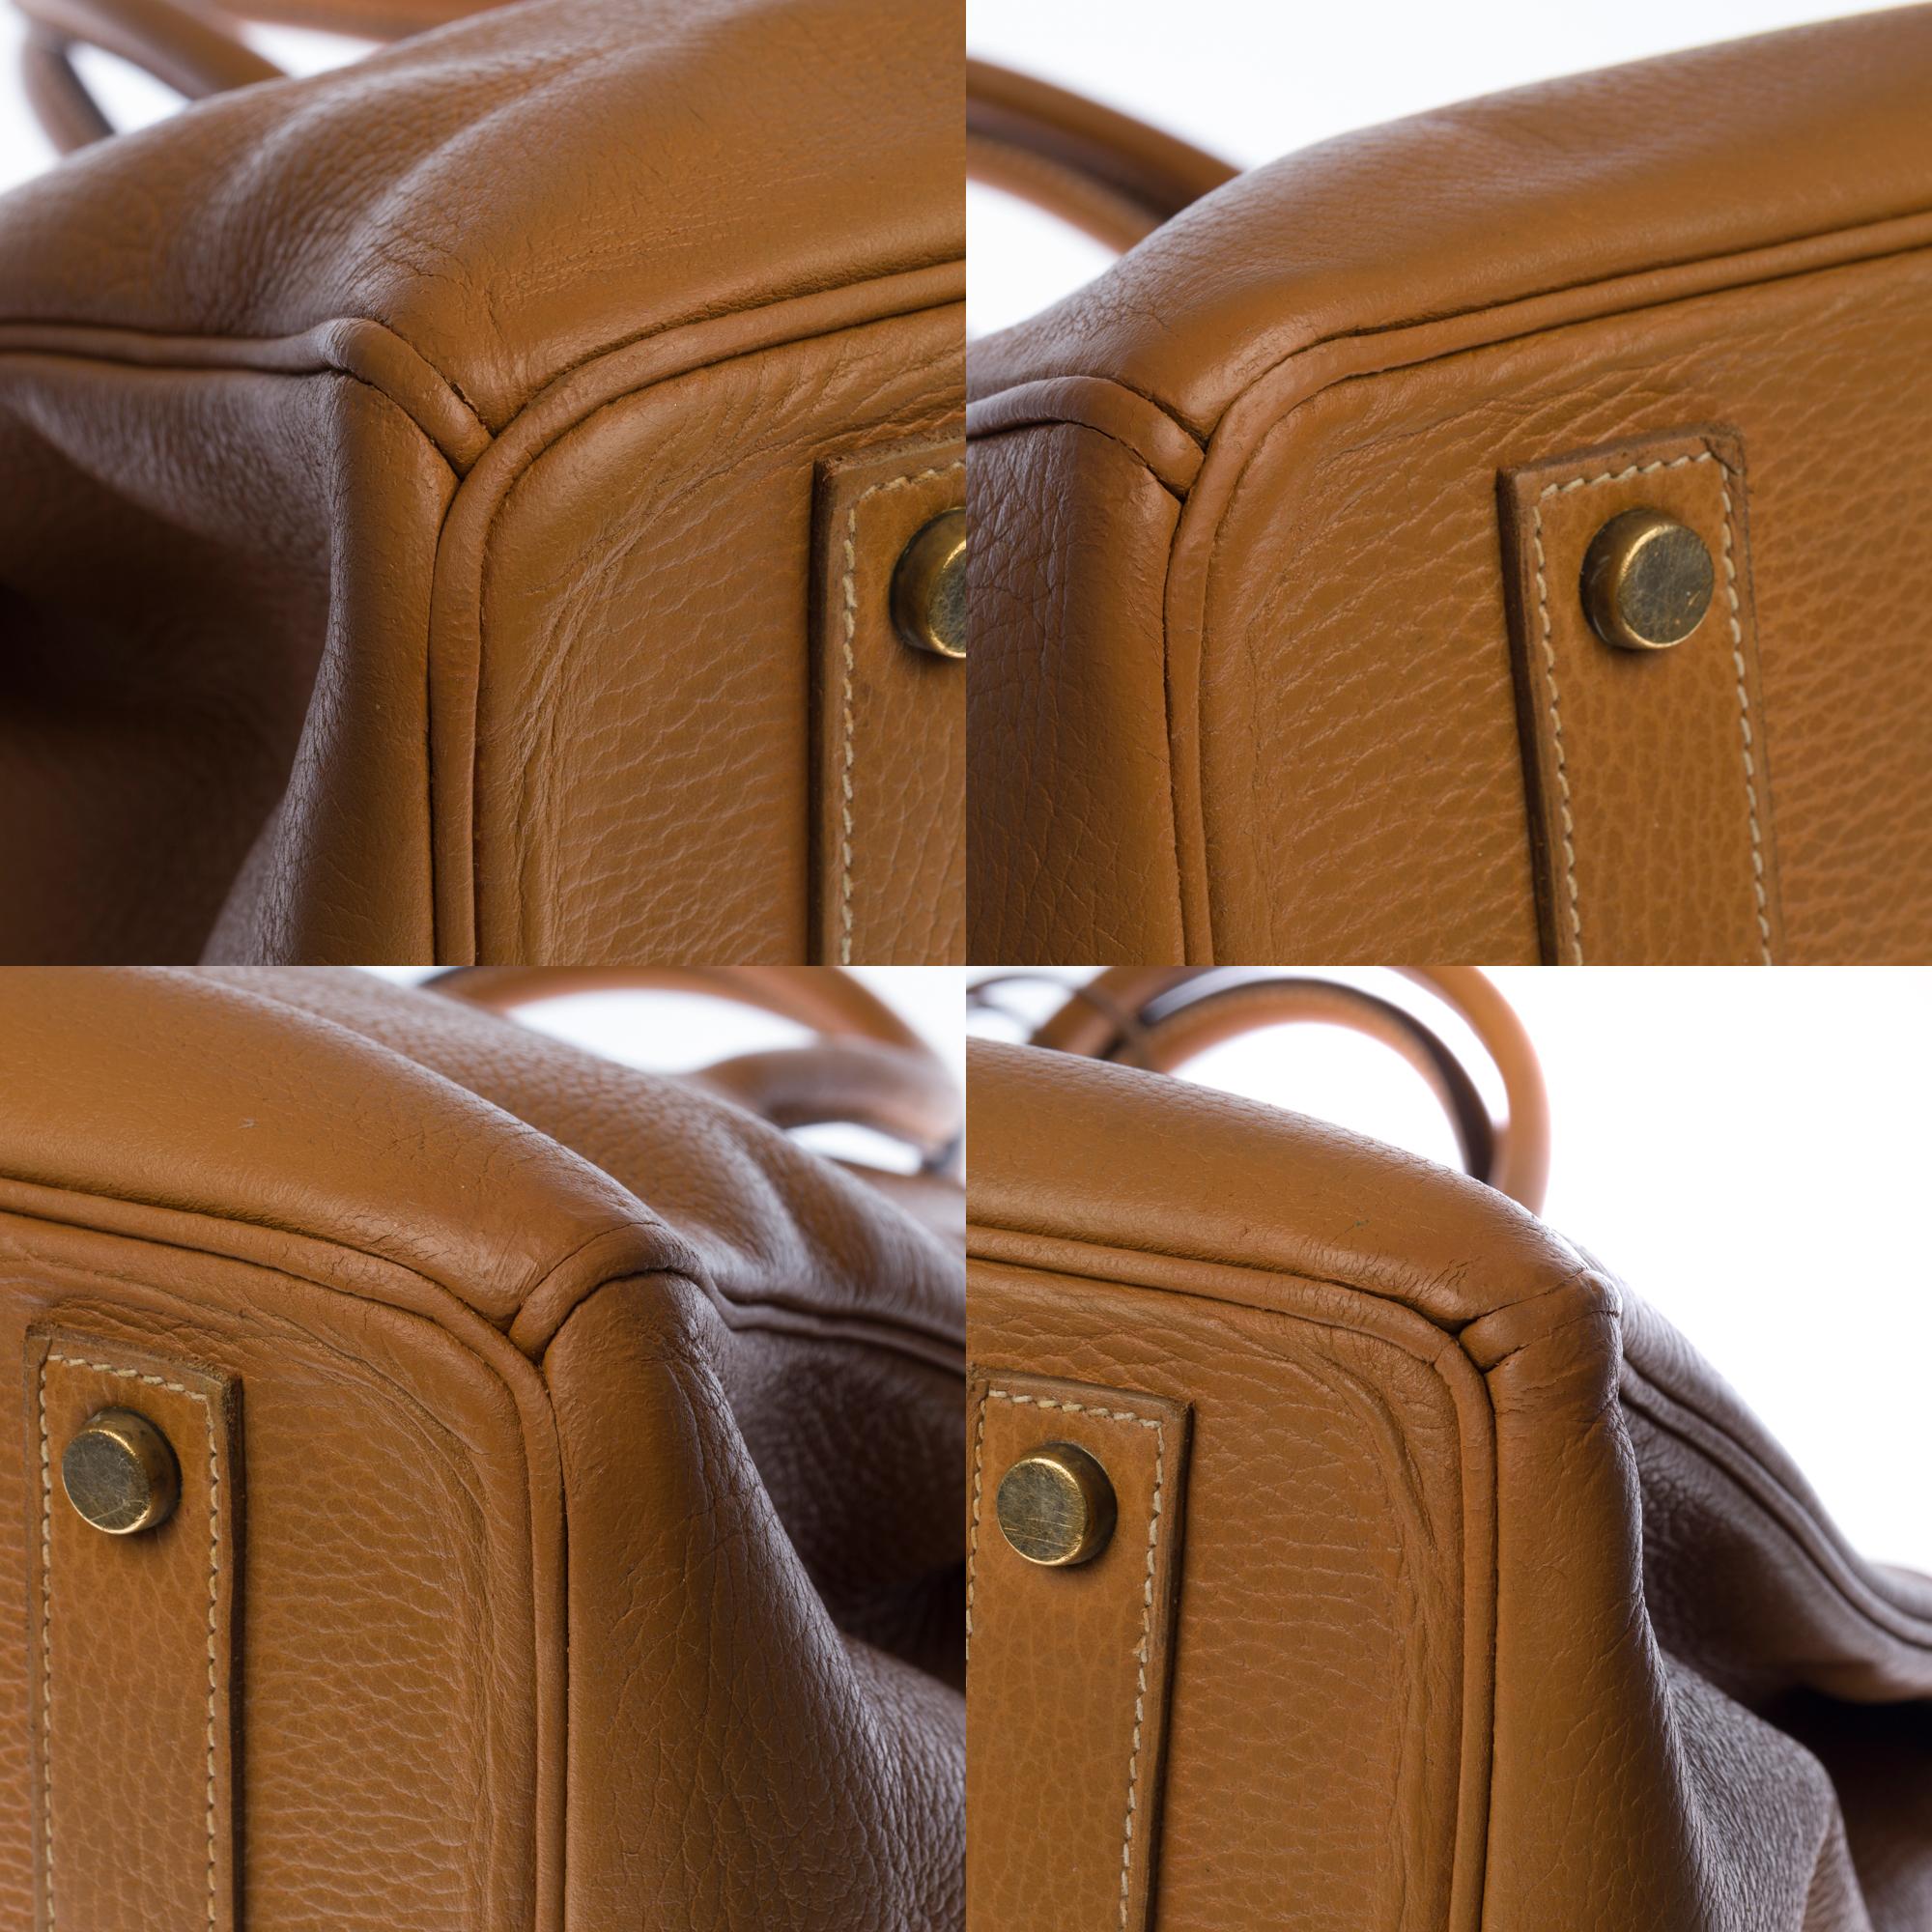 Stunning Hermes Birkin 40cm handbag in Gold Vache d'Ardenne leather, GHW 5